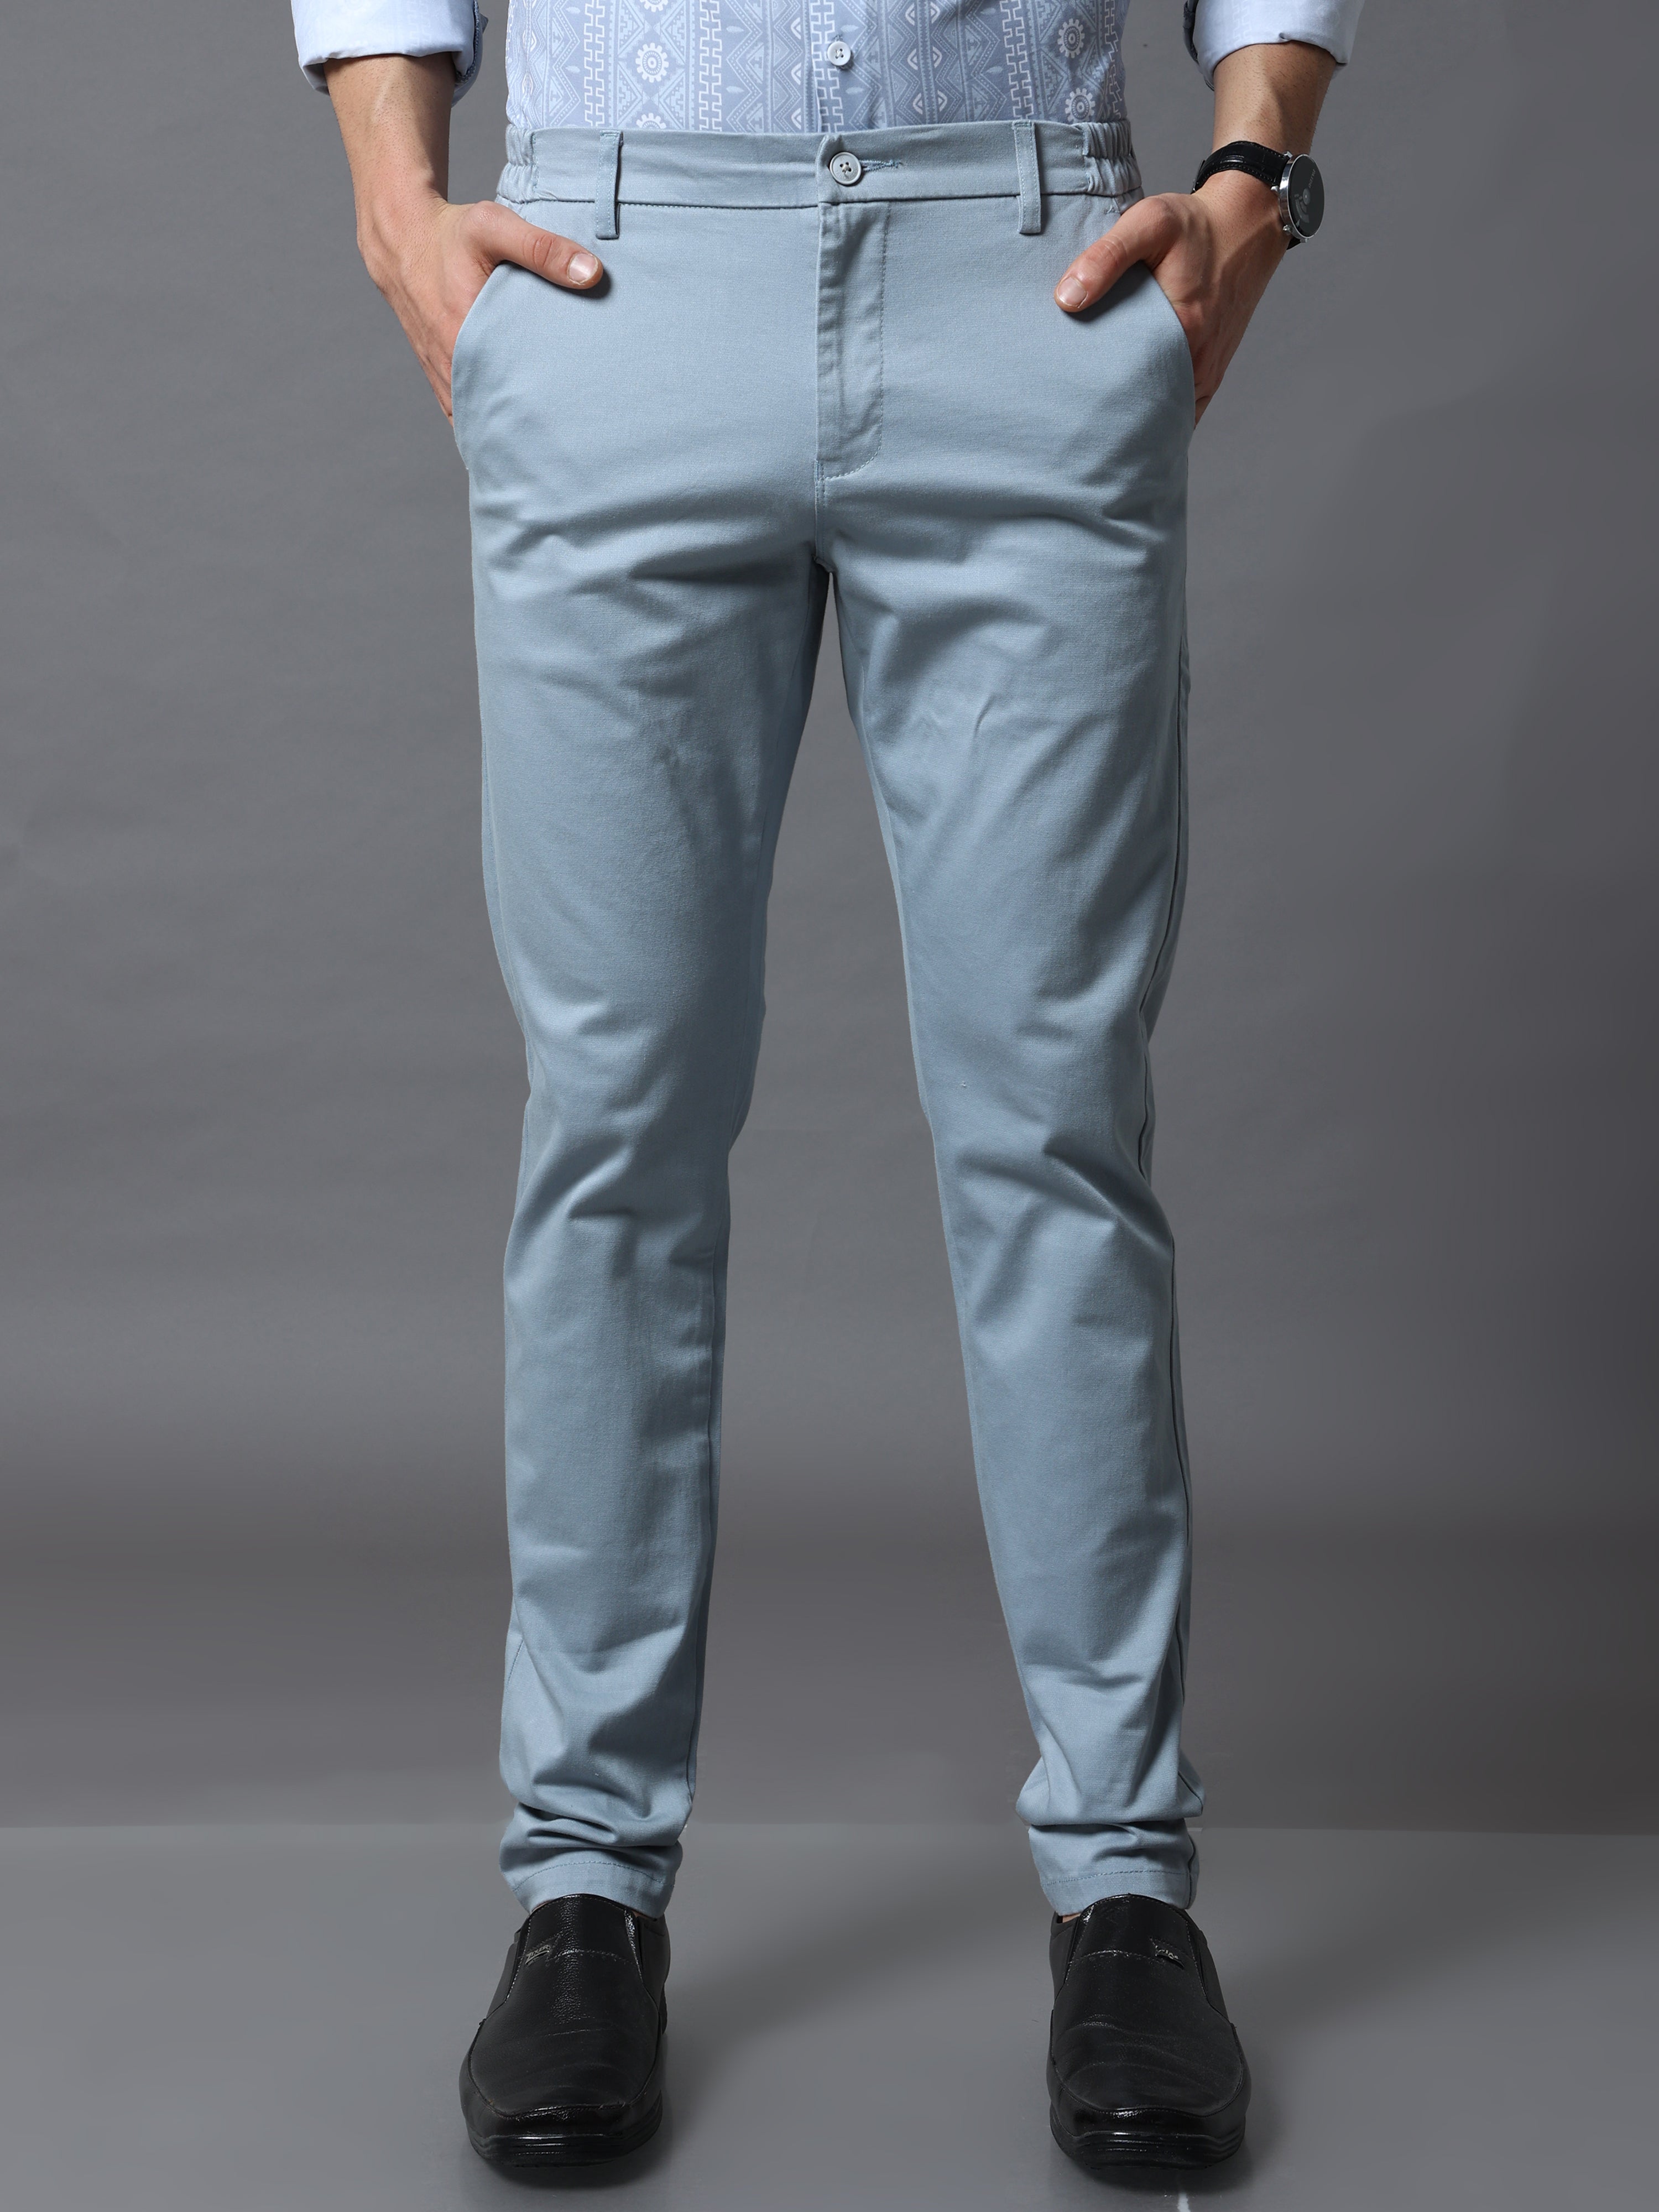 Buy Men's Slim Trouser Pants | PXG